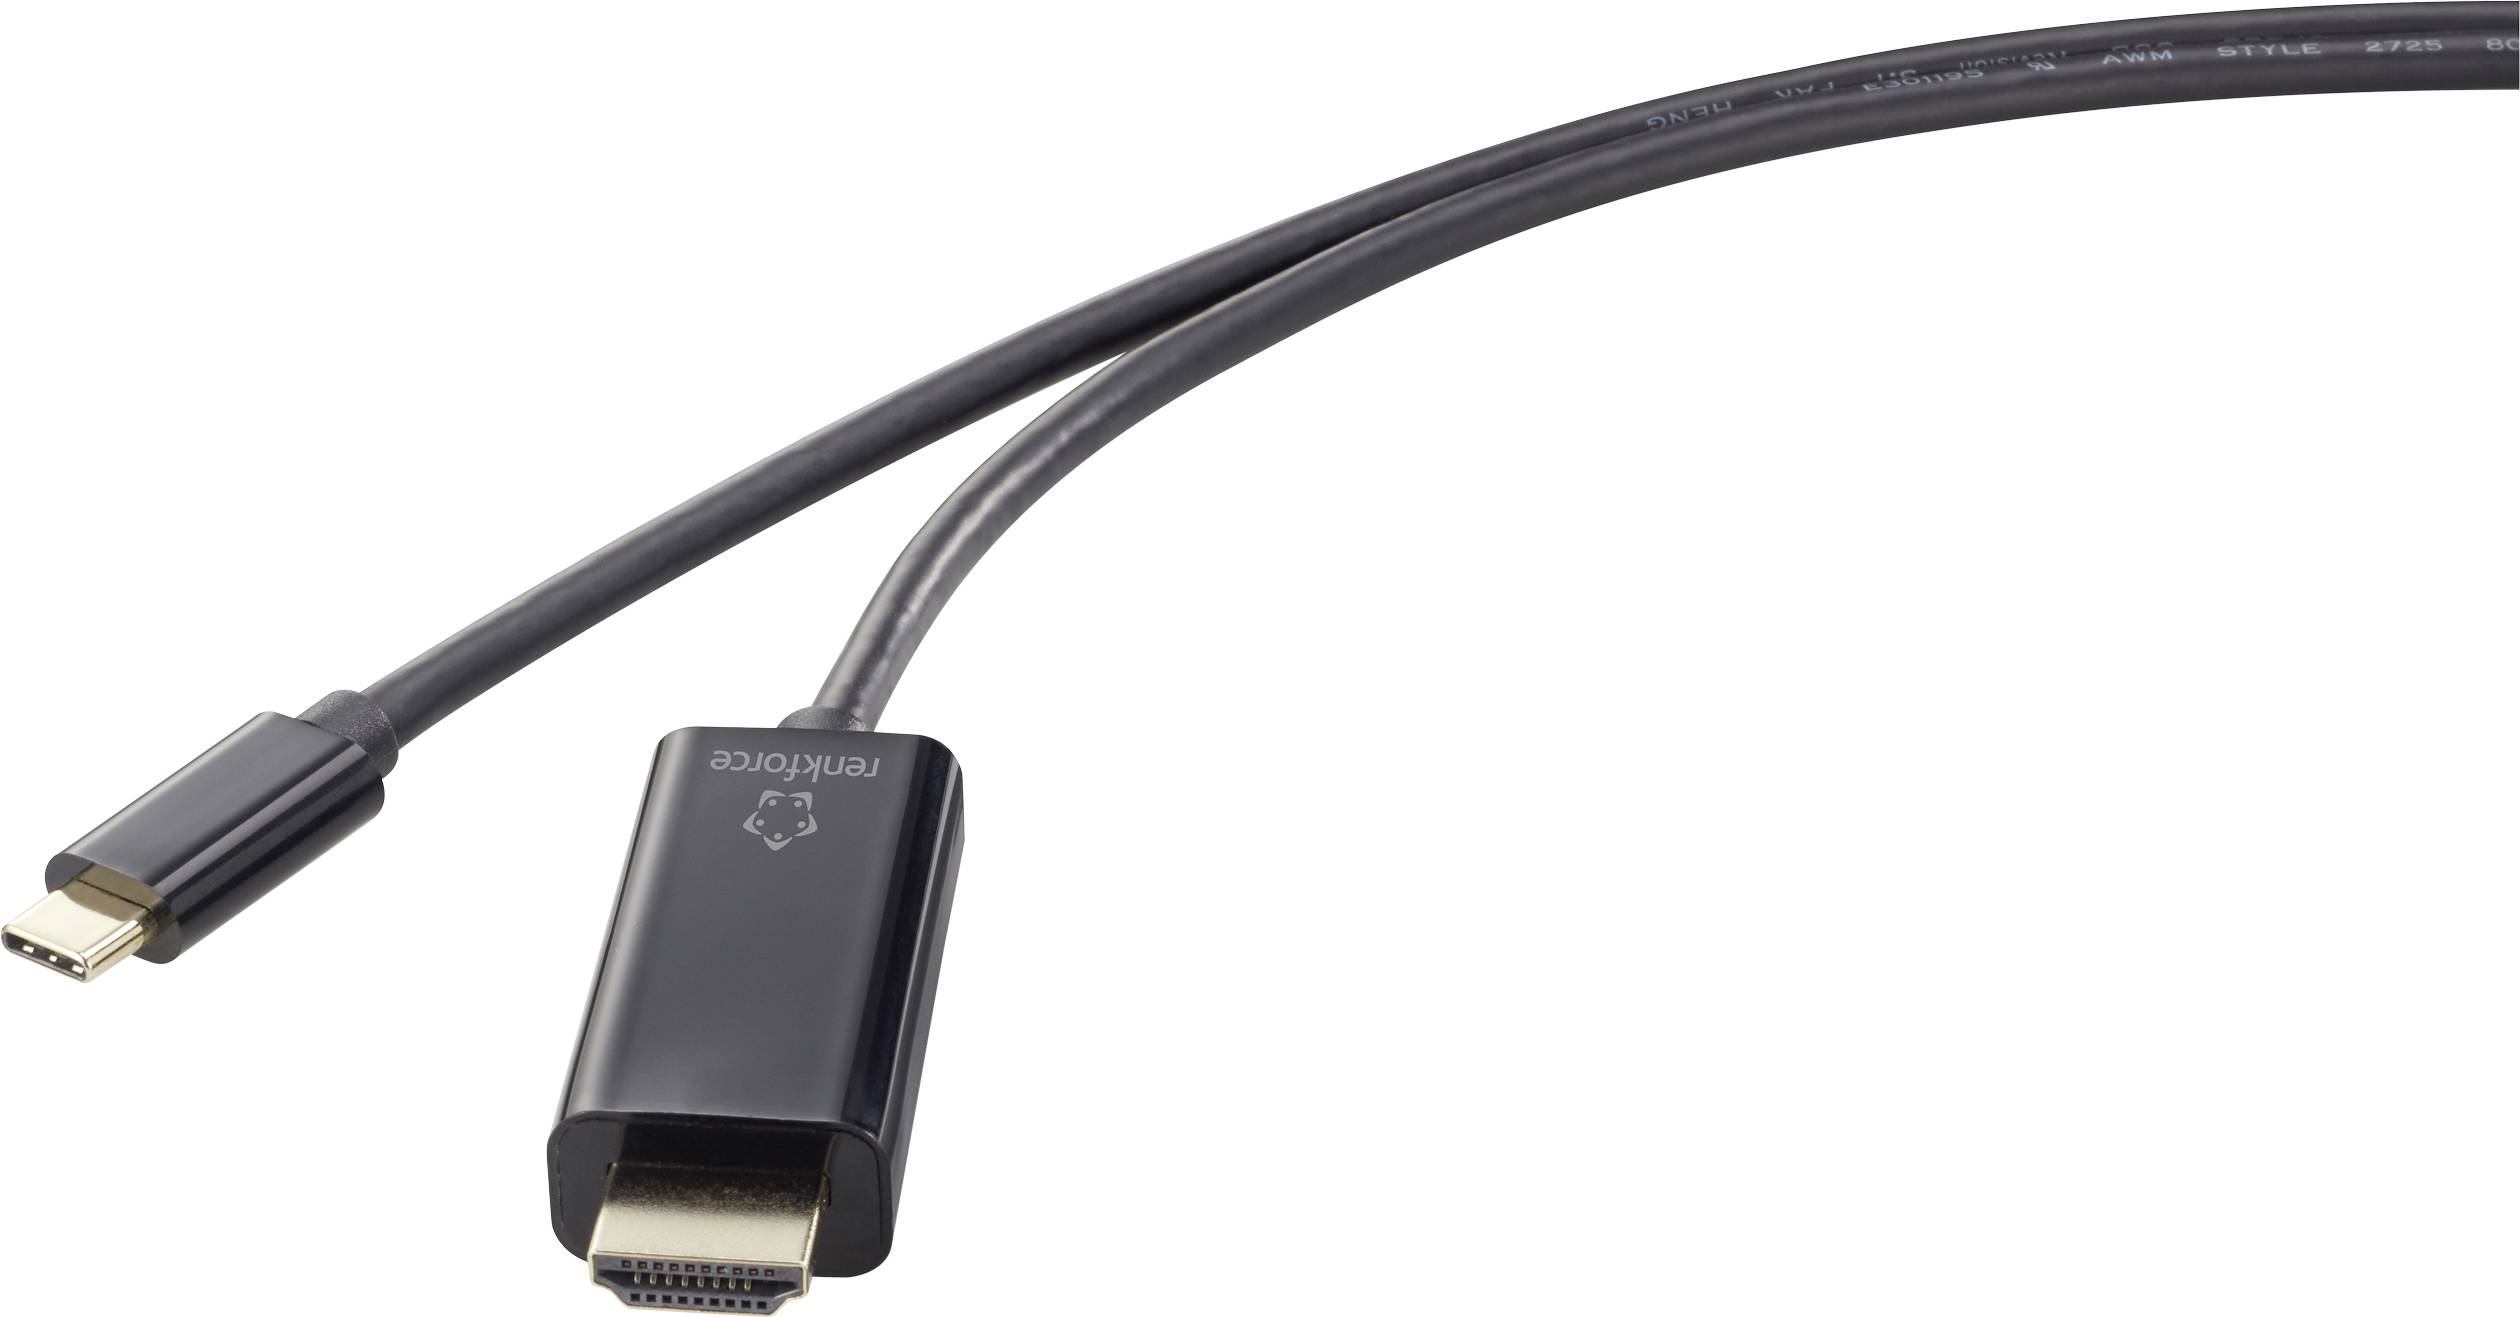 CONRAD Renkforce USB Anschlusskabel 3.00 m Schwarz [1x USB-C? Stecker - 1x HDMI-Stecker]